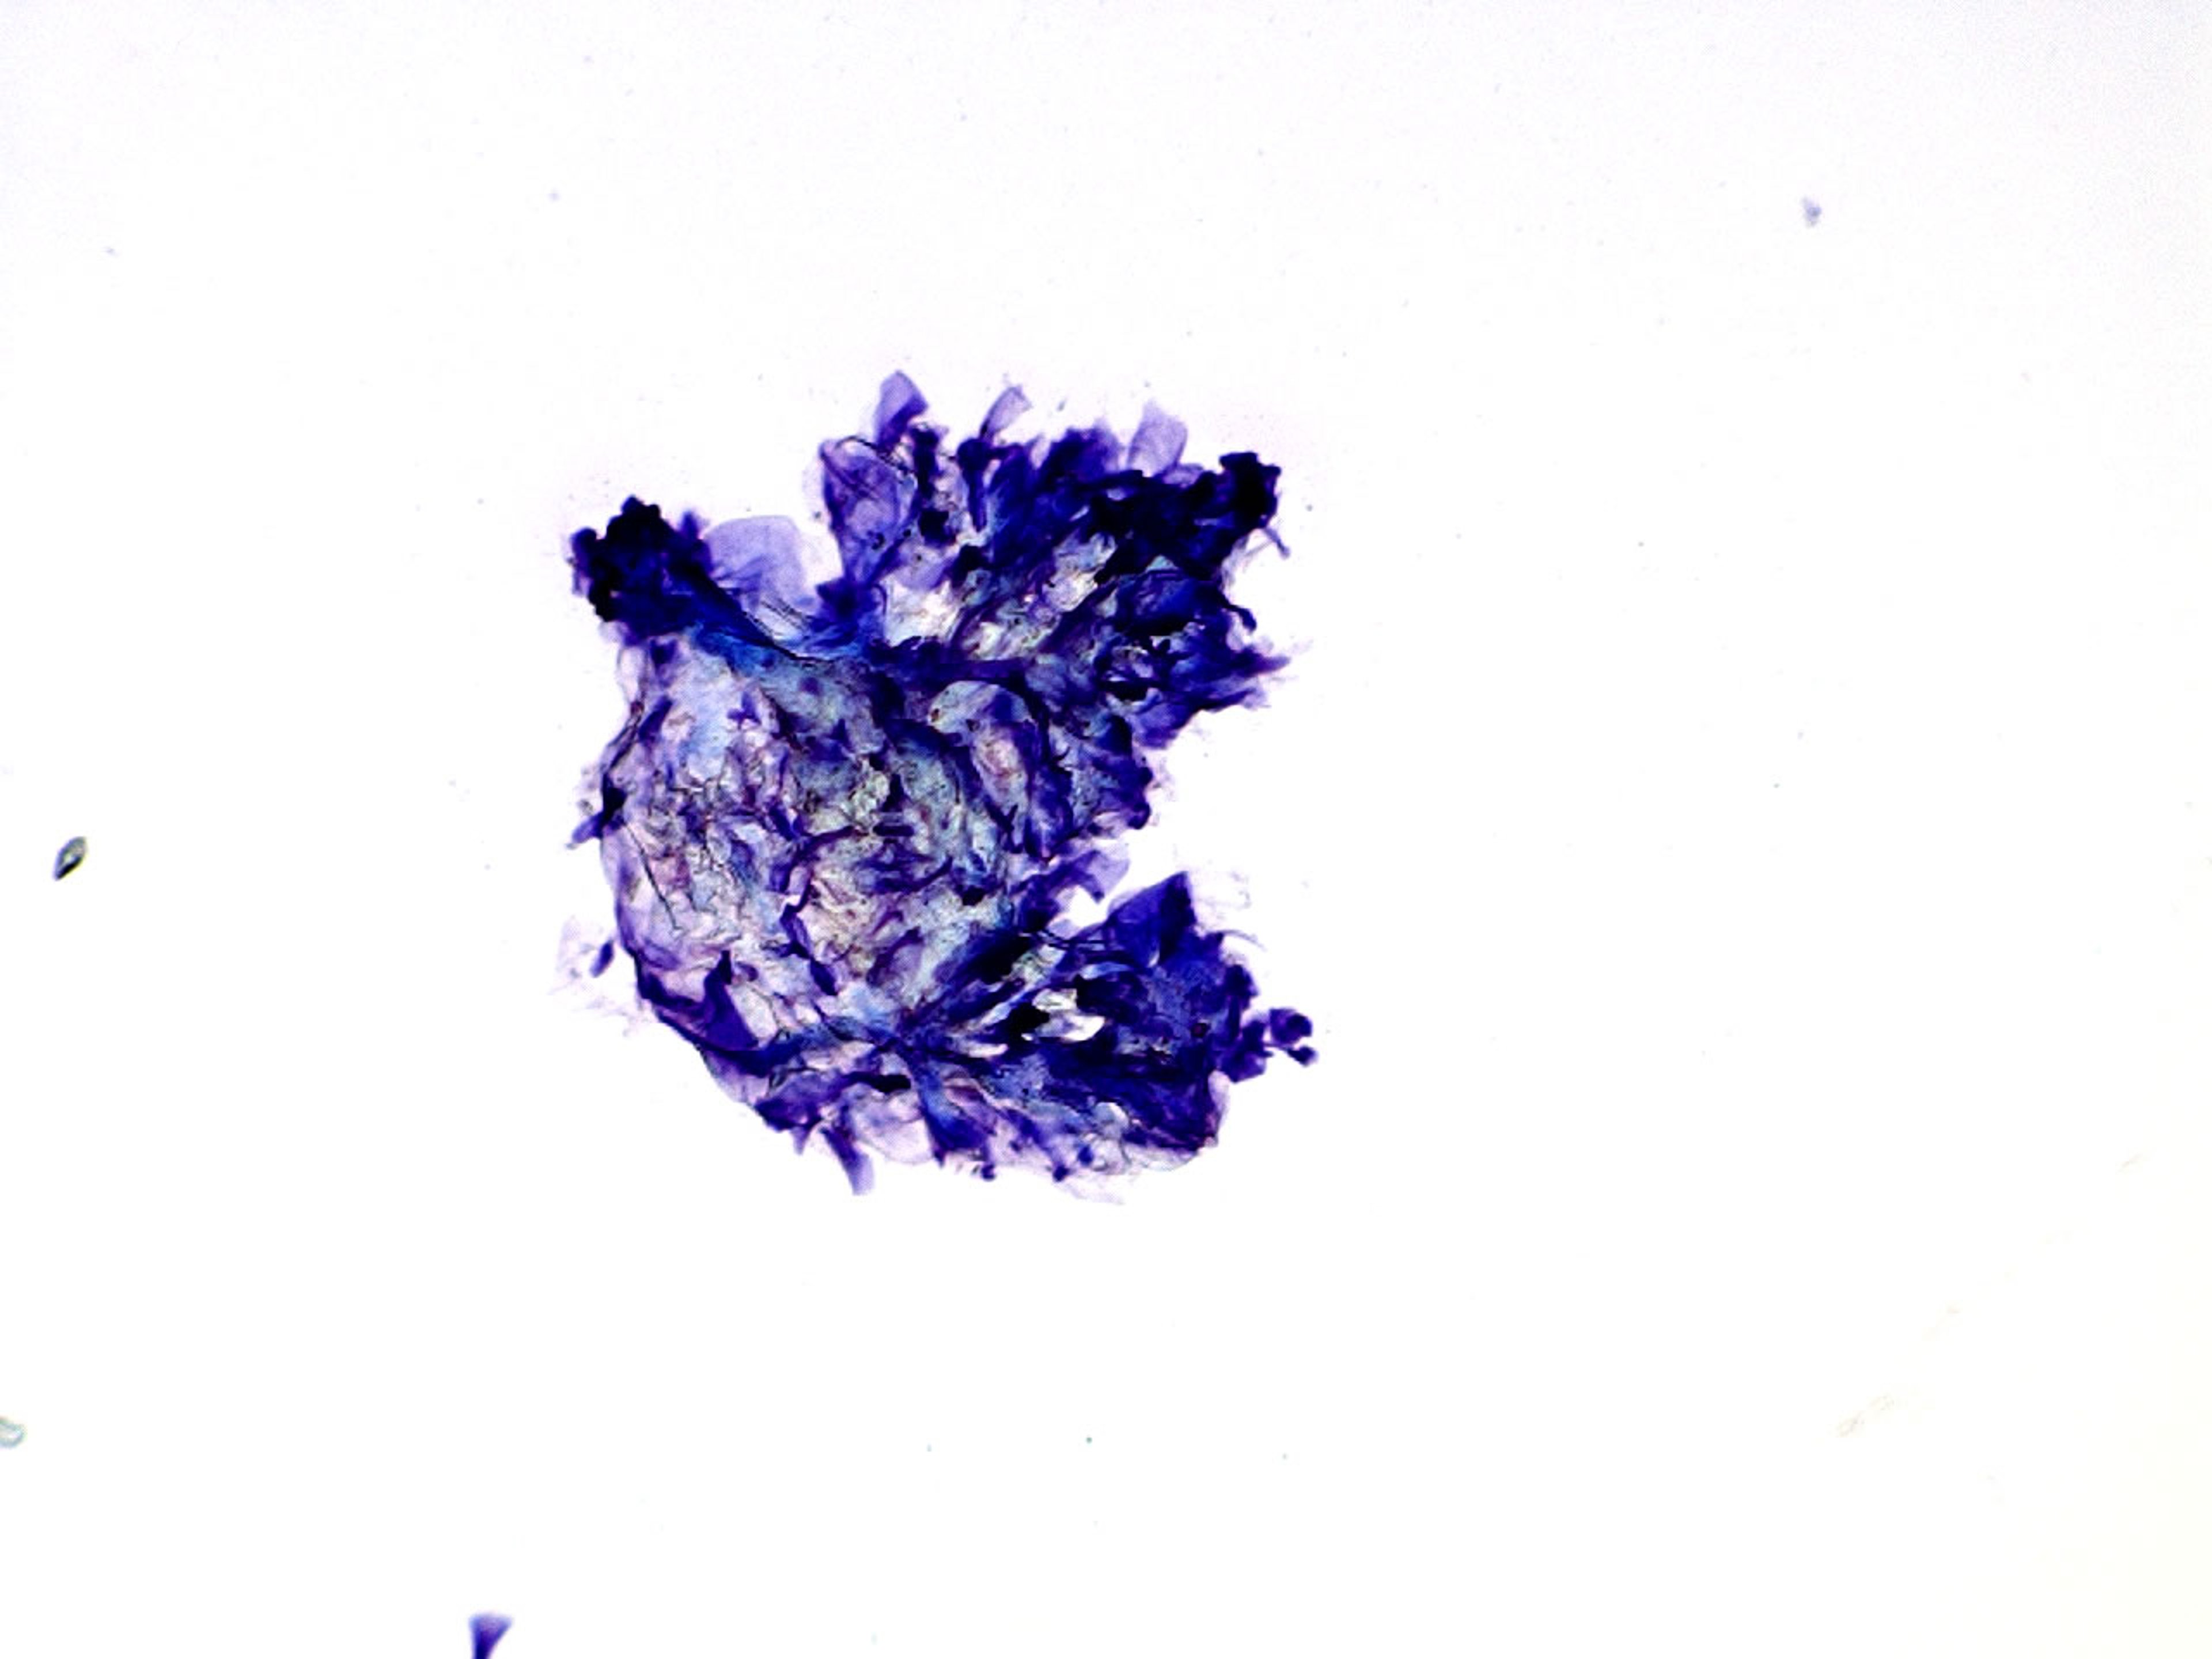 Keratin clump, cytology